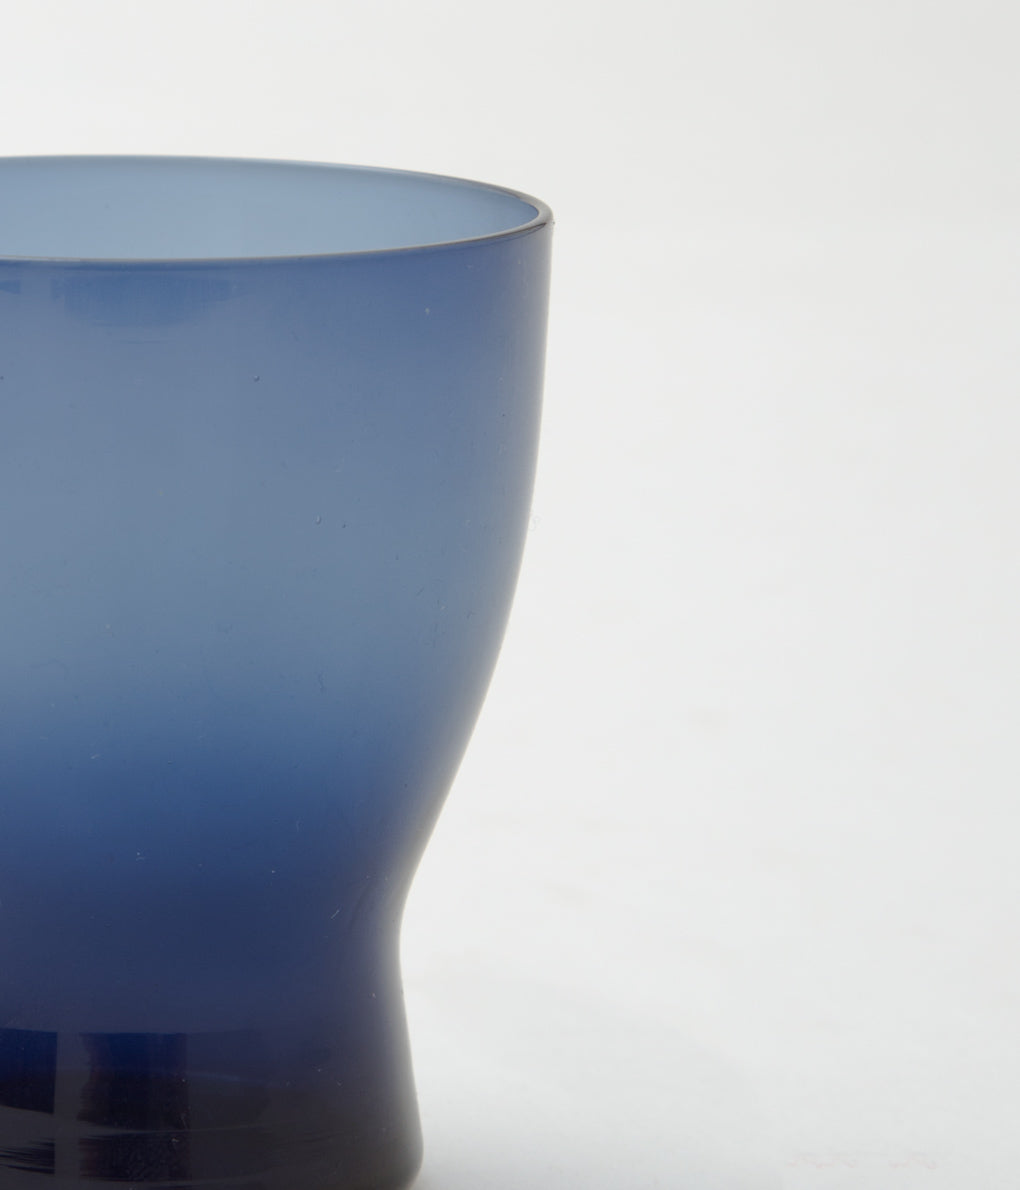 NUUTAJARVI (SAARA HOPEA) "GLASS 1710" (BLUE)